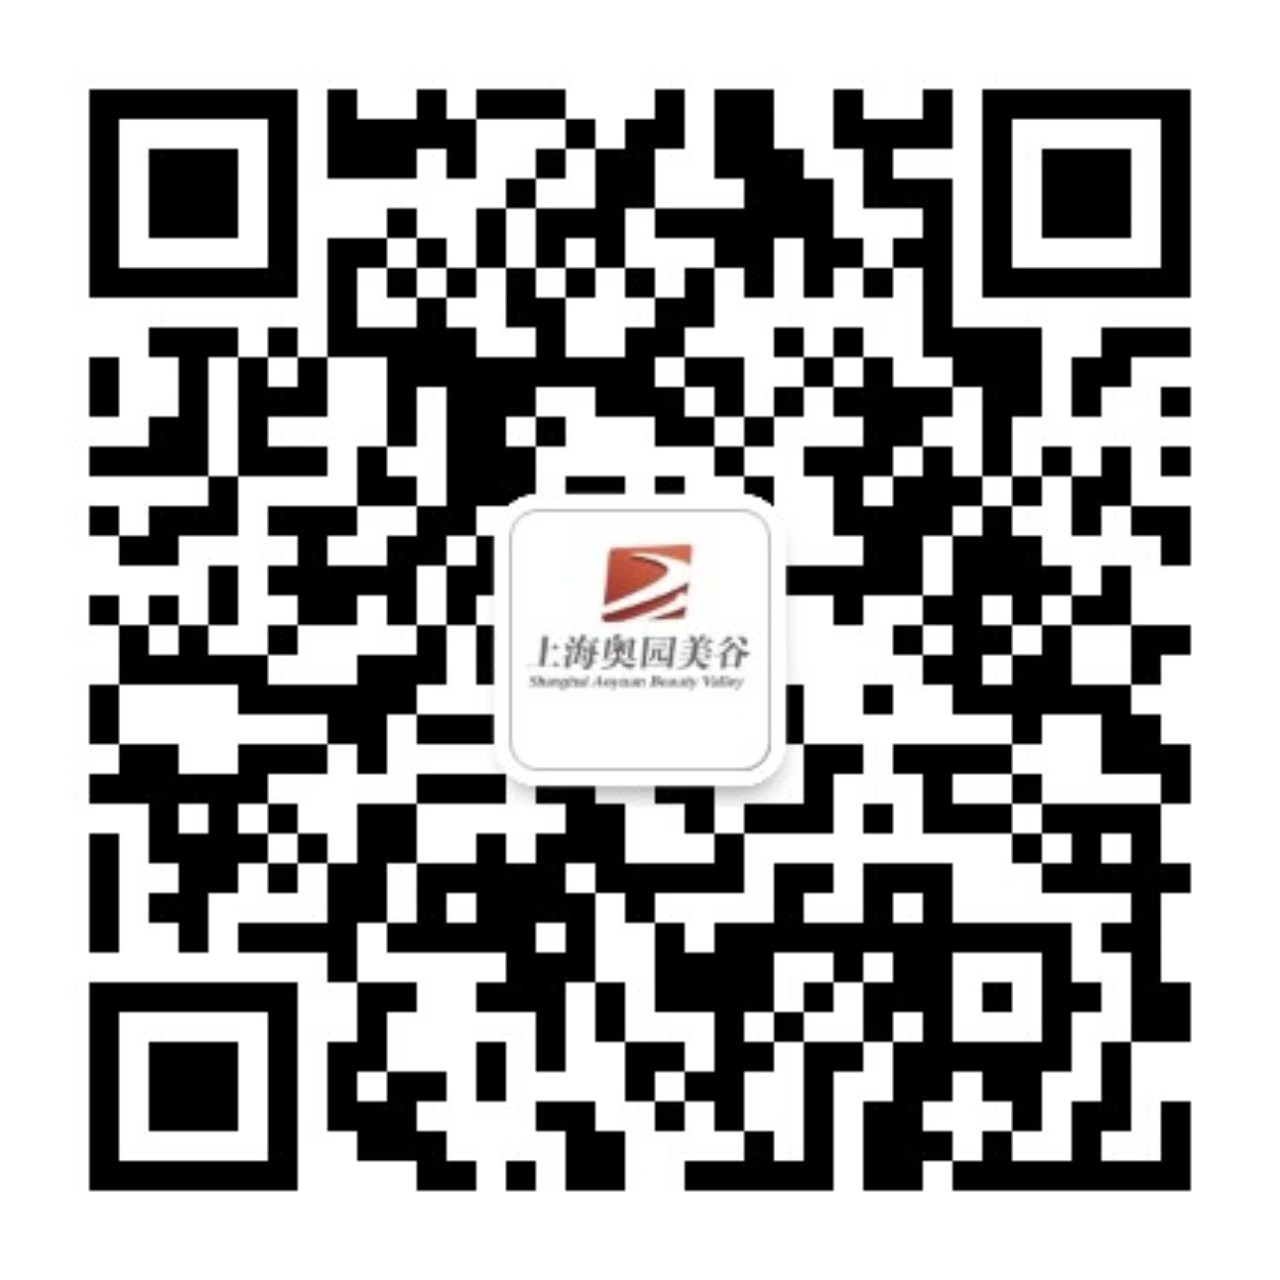 上海伟德体育app
<br>微信订阅号